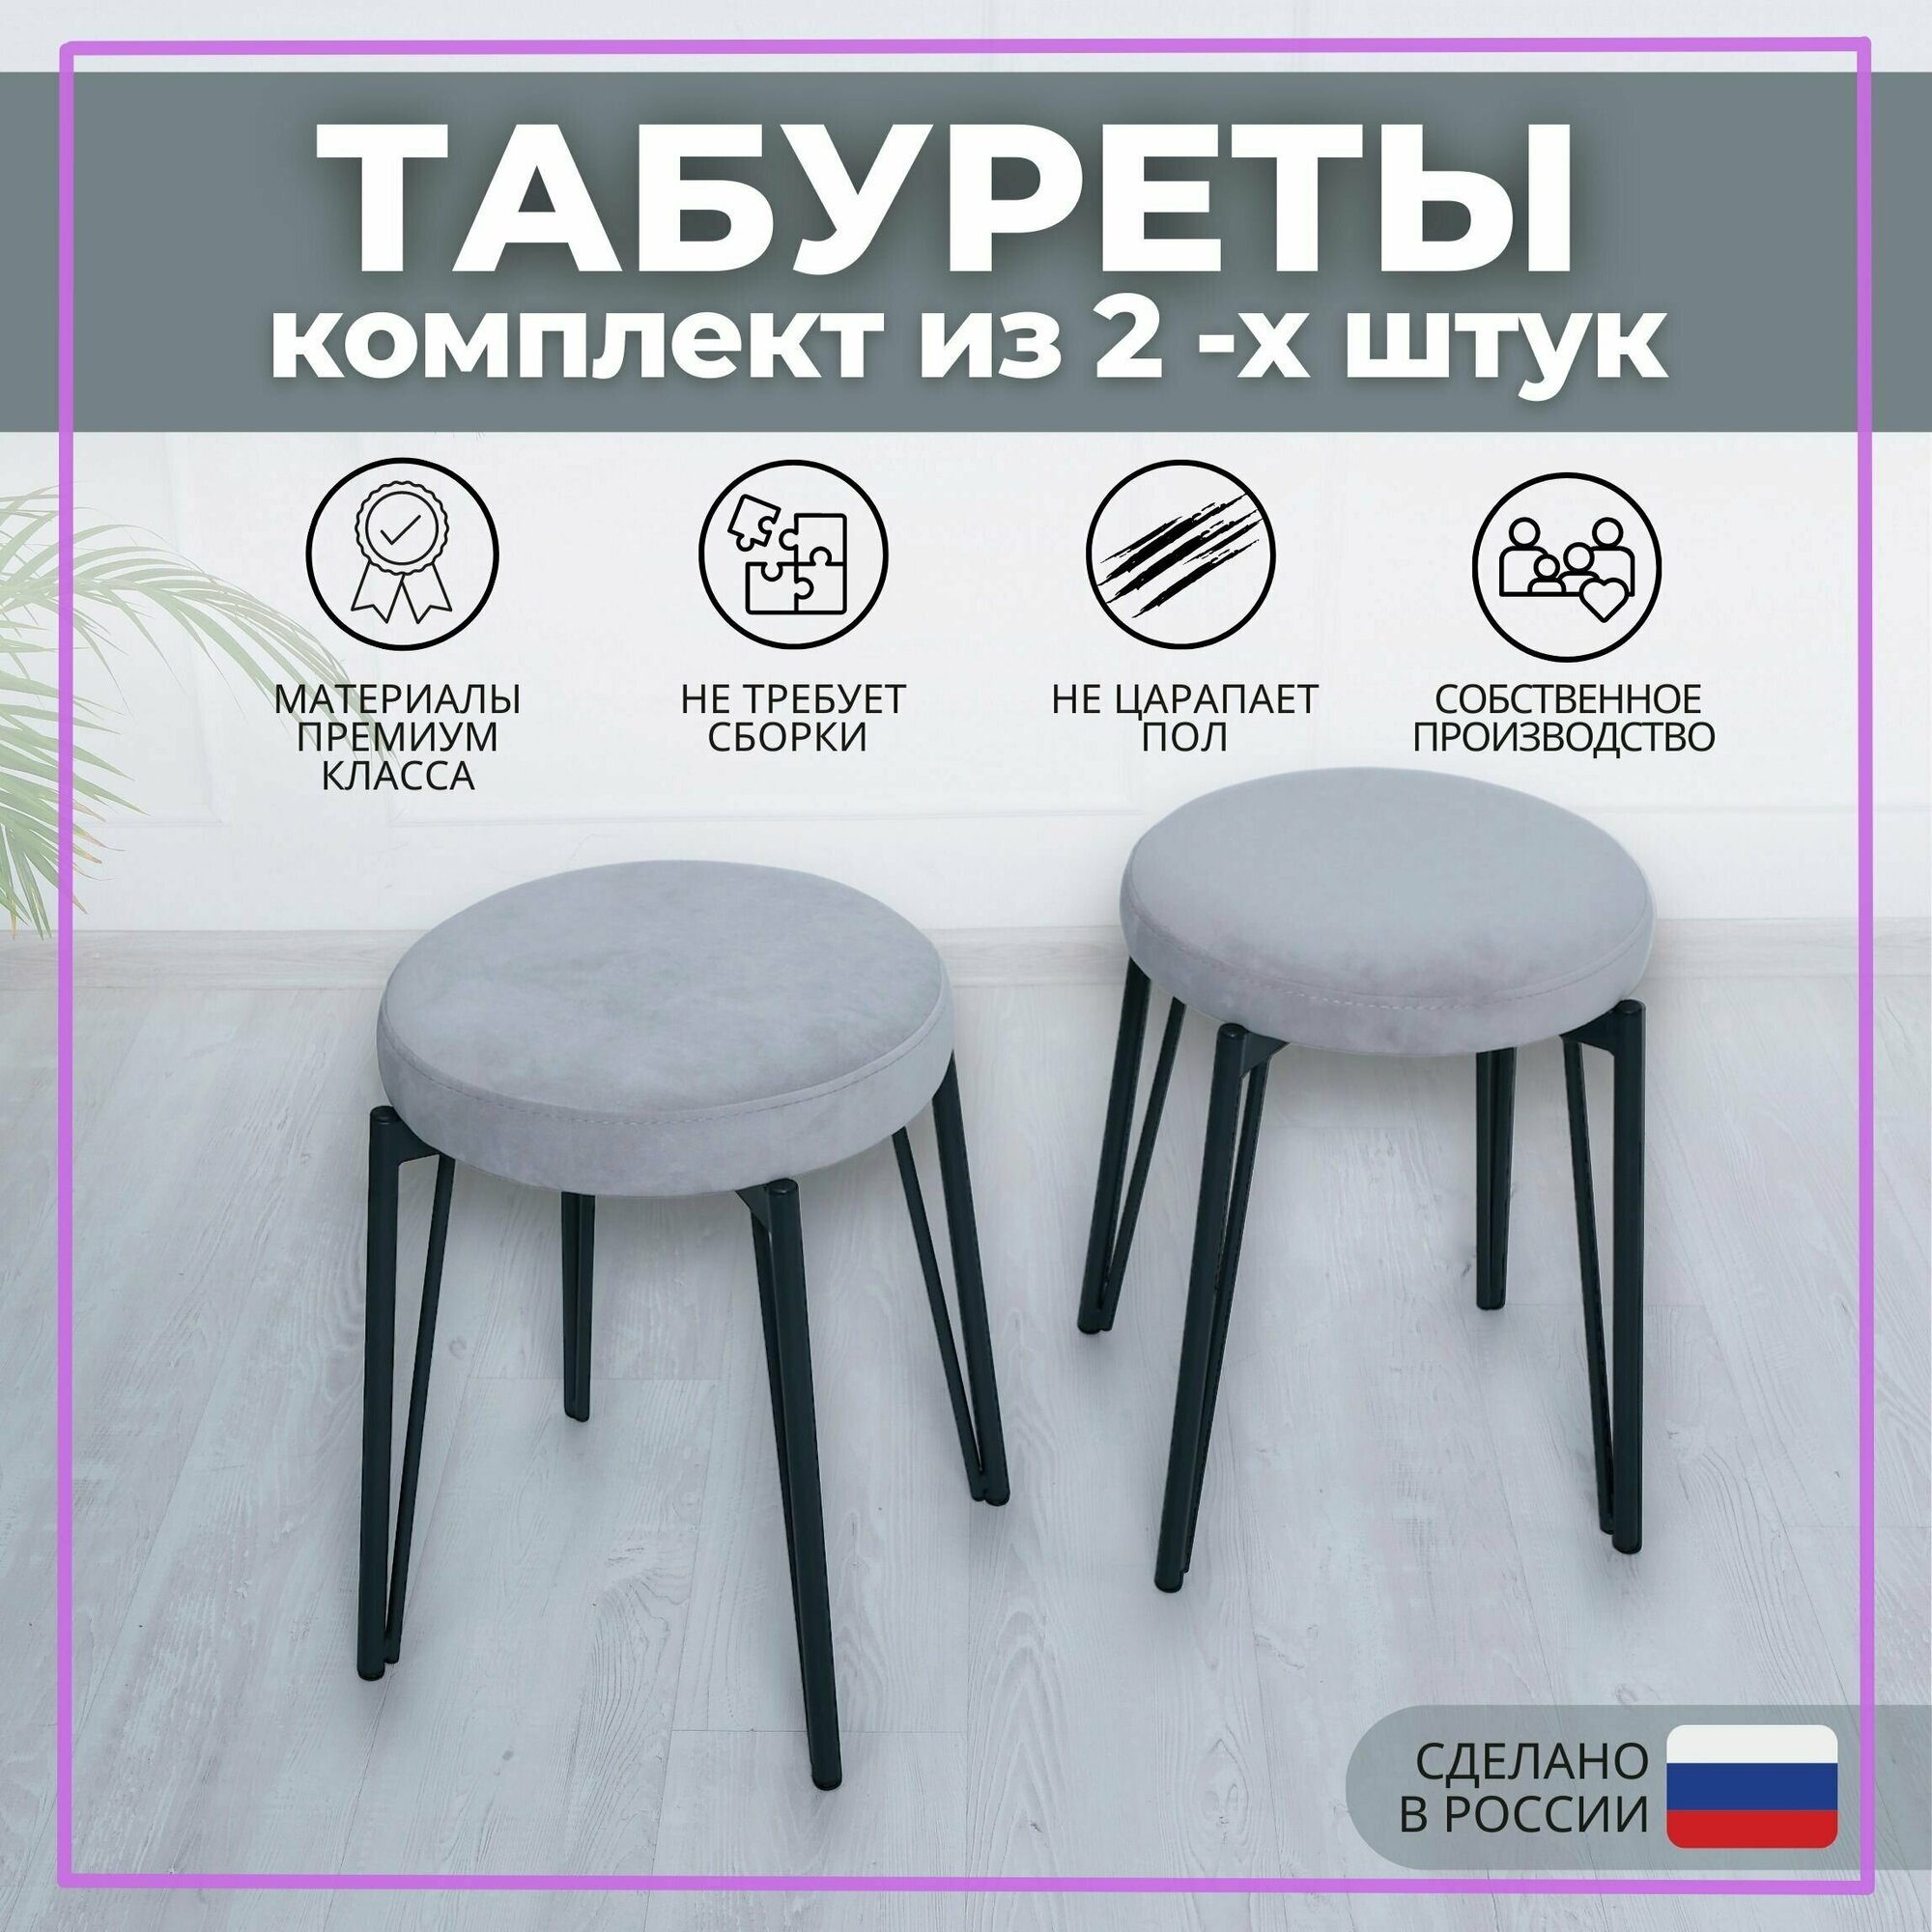 Табурет для кухни SAMOYLOV MEBEL комплект круглых табуретов new